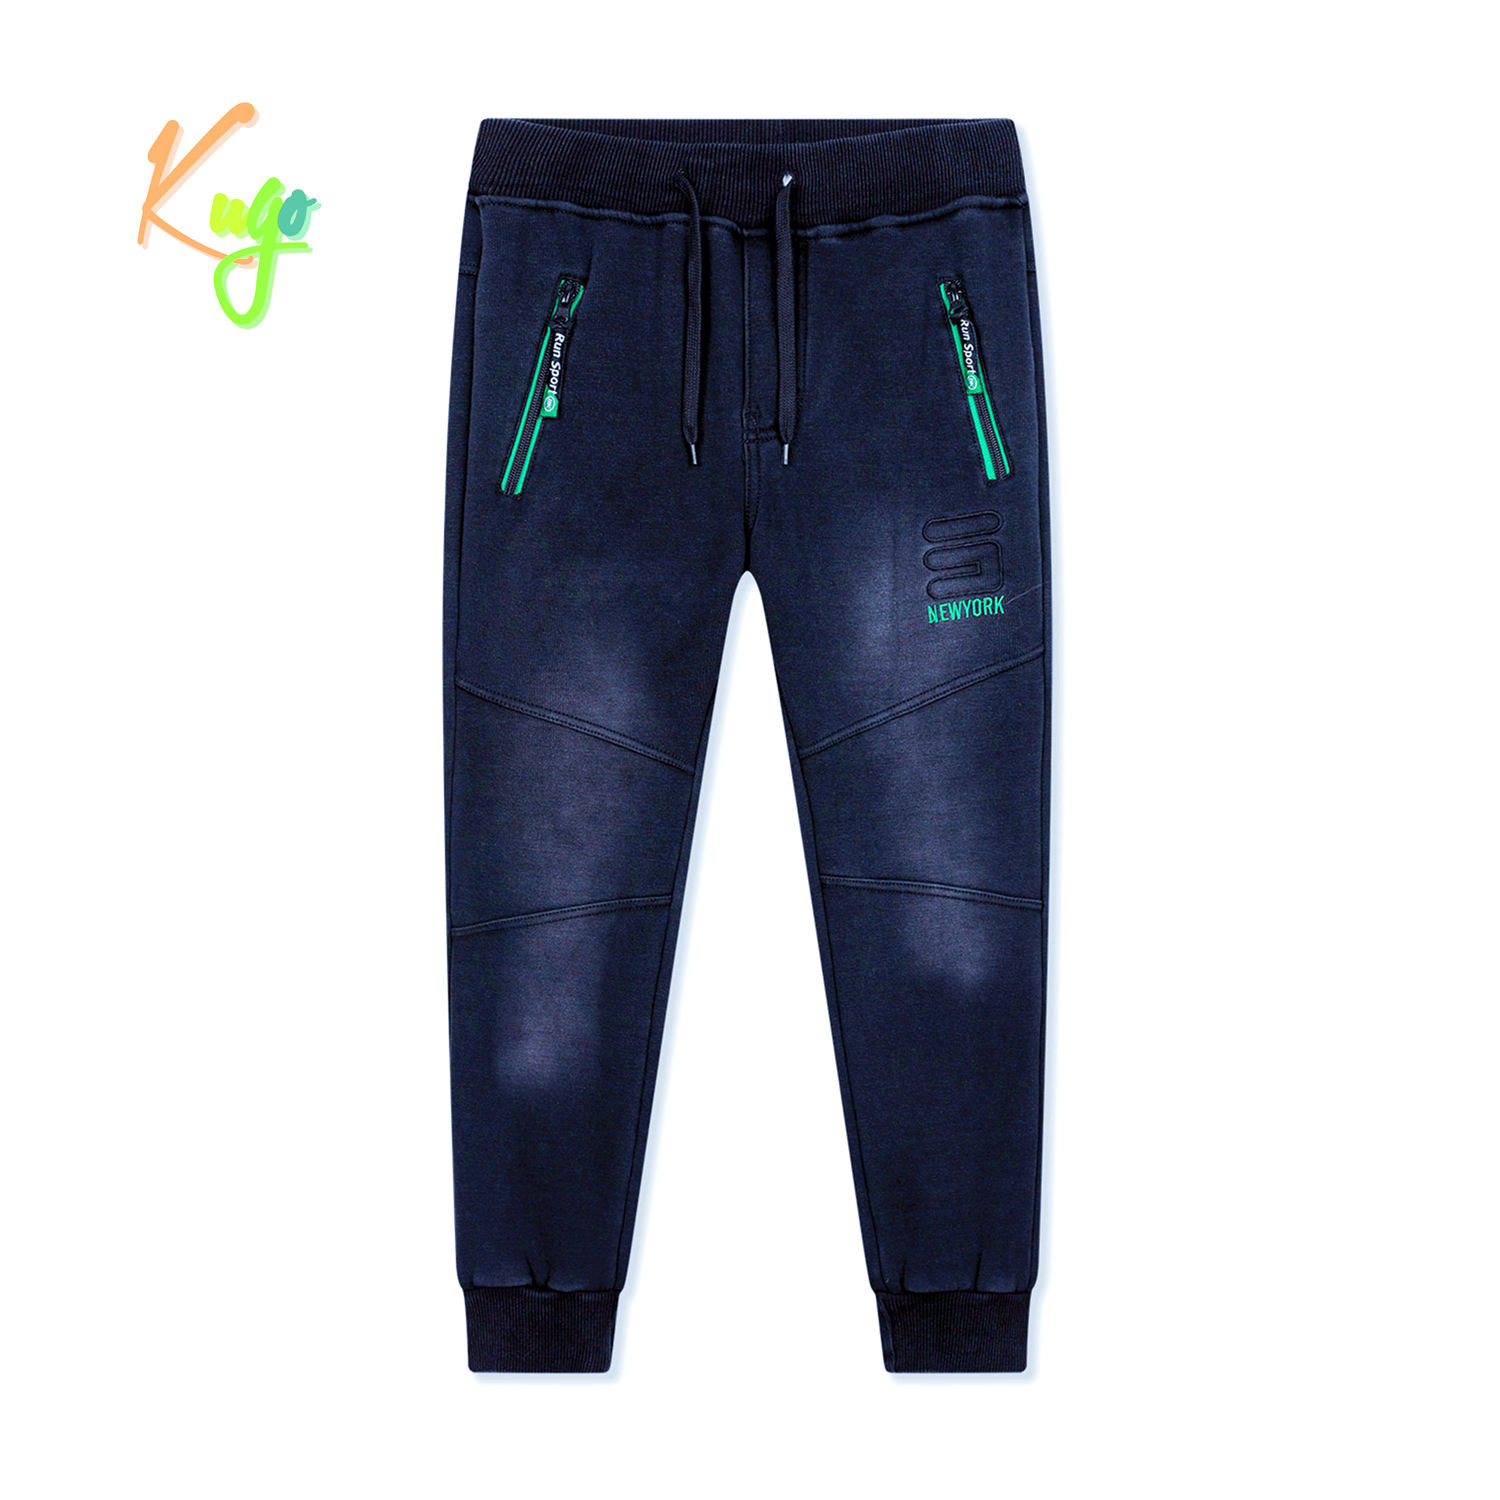 Chlapecké riflové kalhoty/ tepláky, zateplené - KUGO FK0318, modrá Barva: Modrá, Velikost: 164